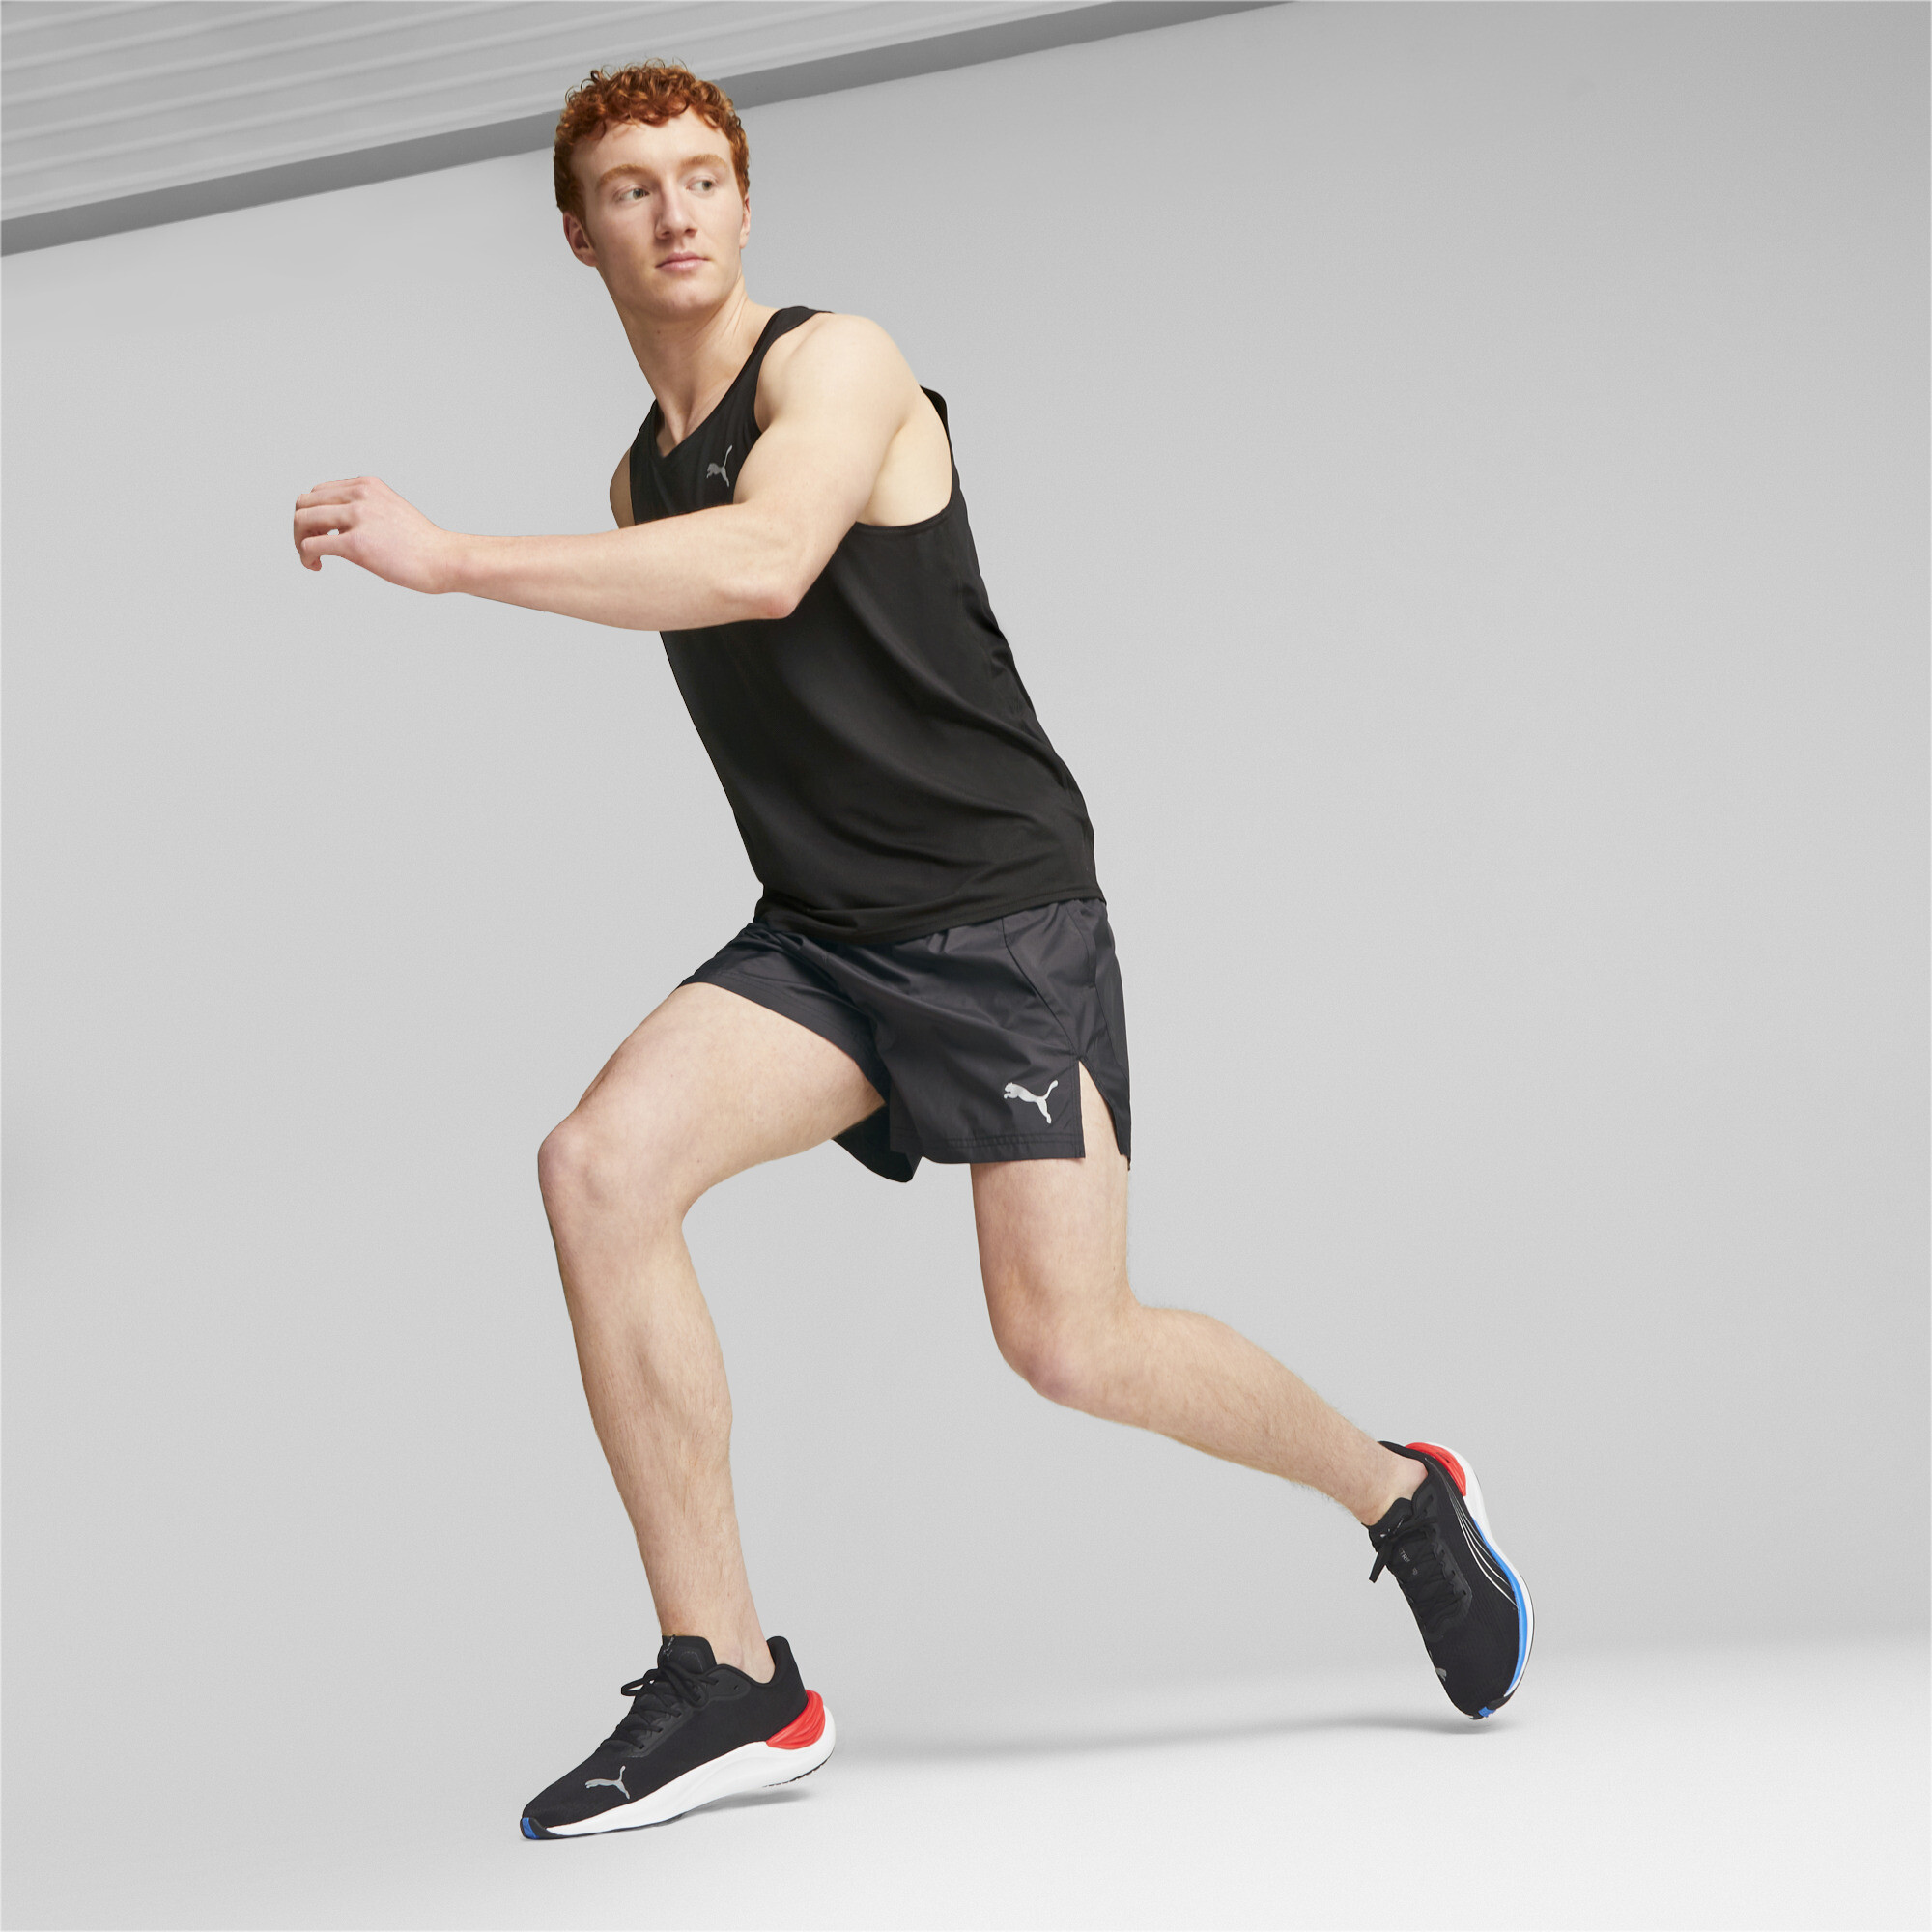 Men's PUMA Electrify NITROâ¢ 3 Running Shoes In Black, Size EU 47